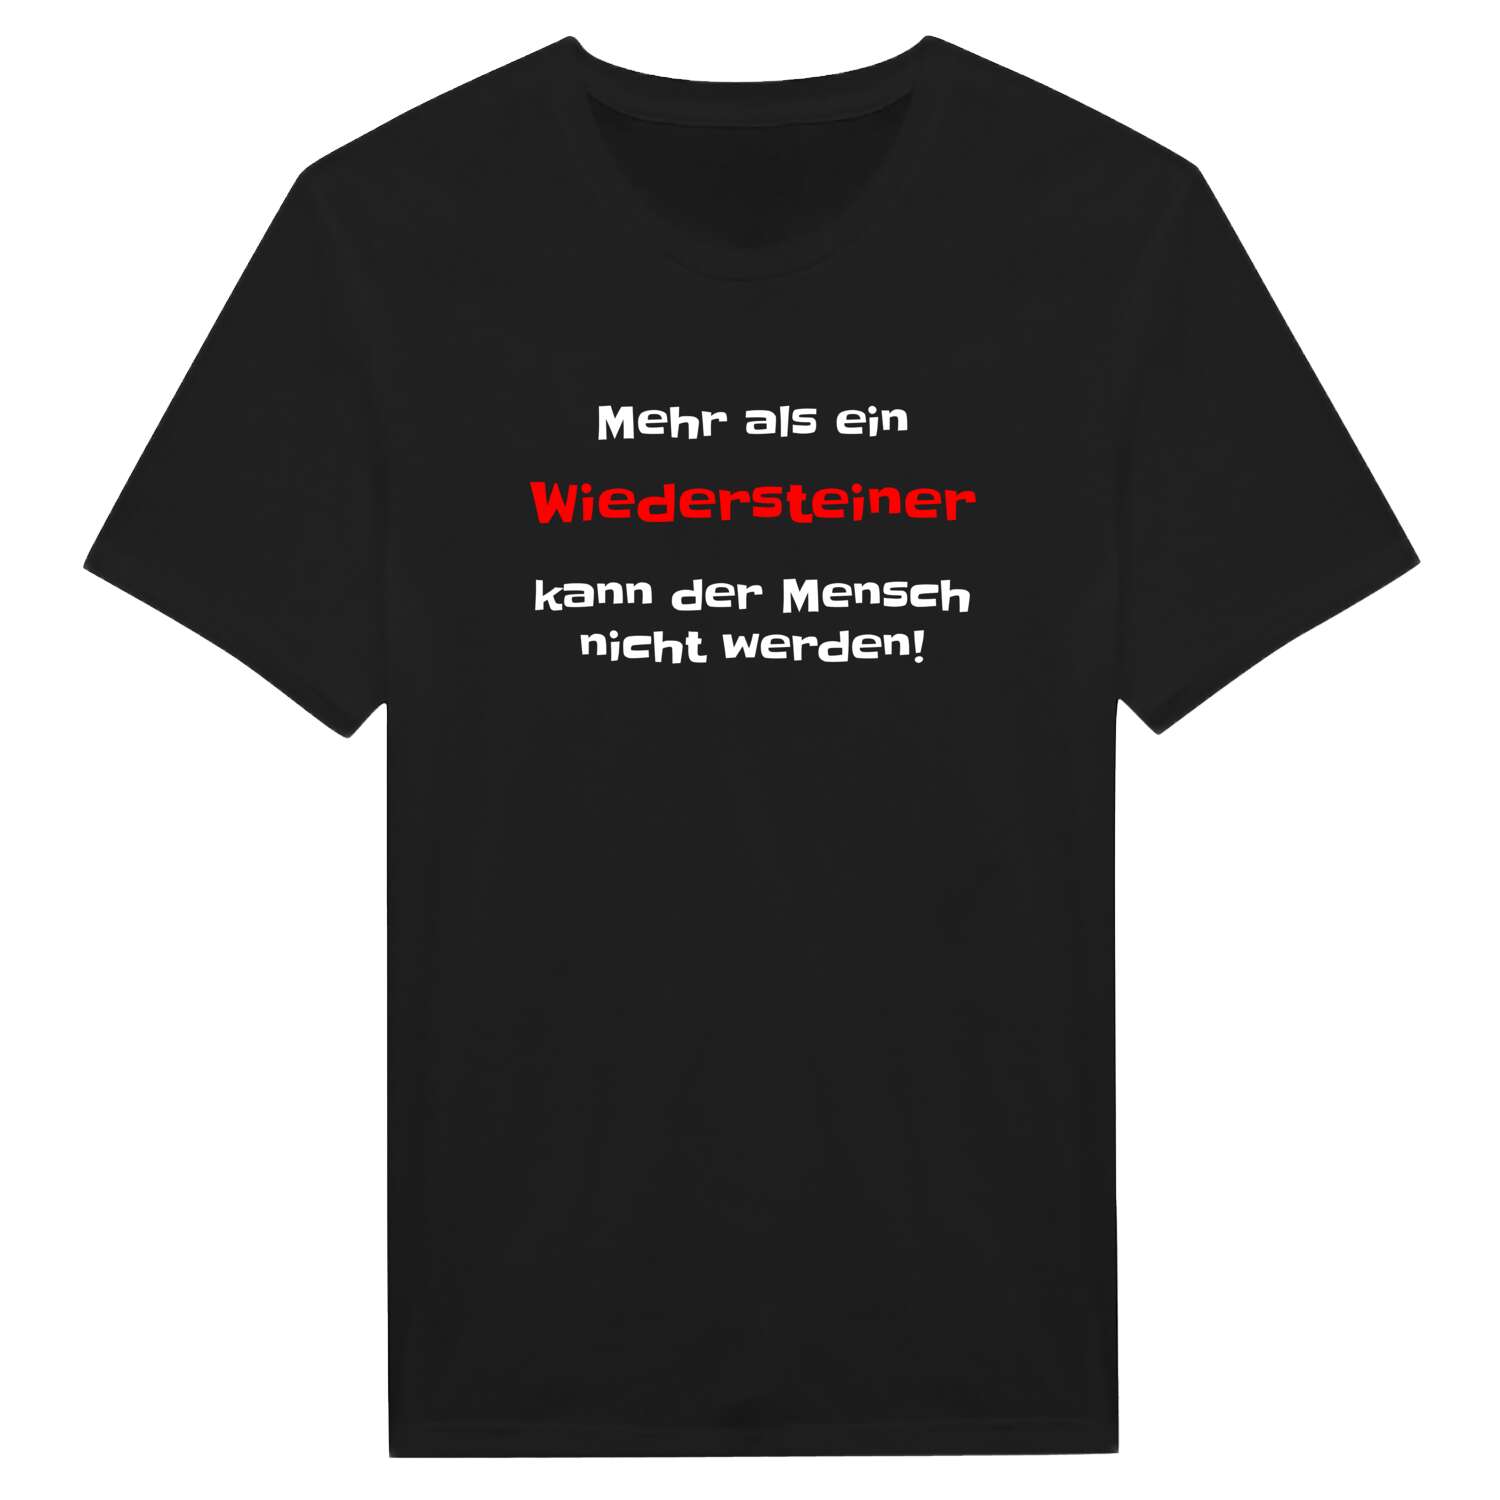 Wiederstein T-Shirt »Mehr als ein«